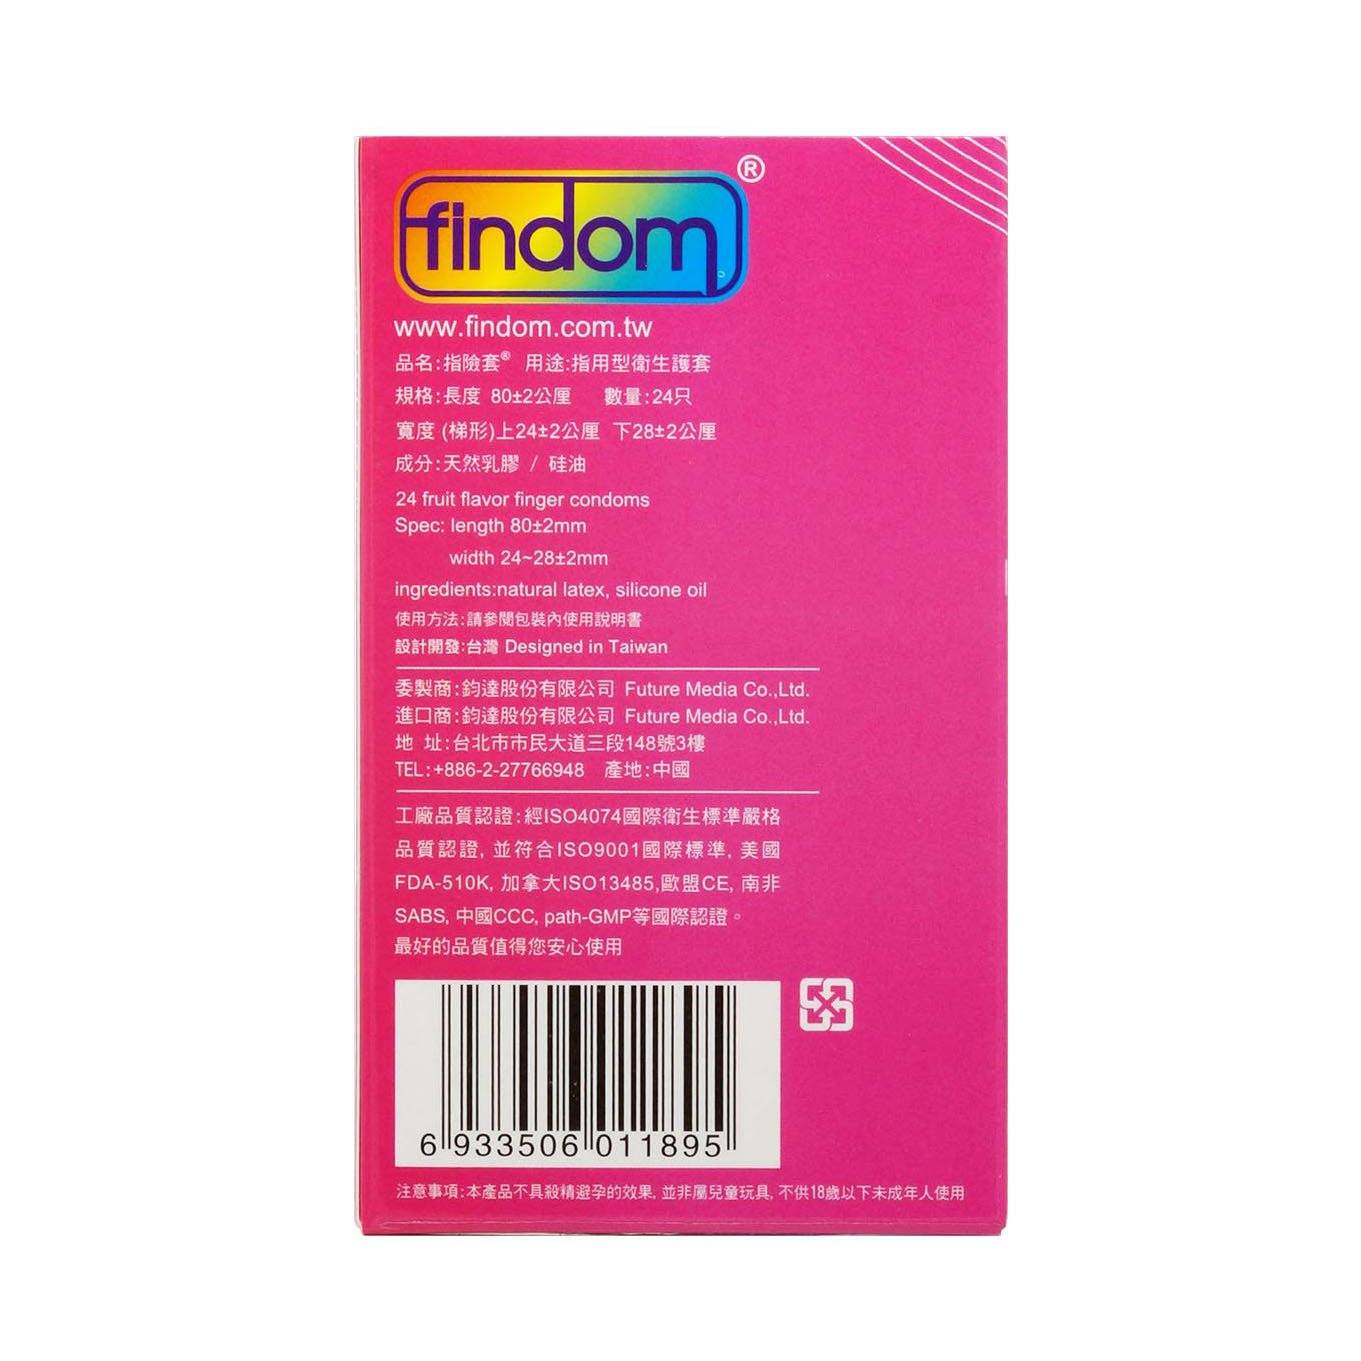 FINDOM 緊緻貼服型 24 片裝 乳膠指險套 X 3 件 優惠套裝 購買